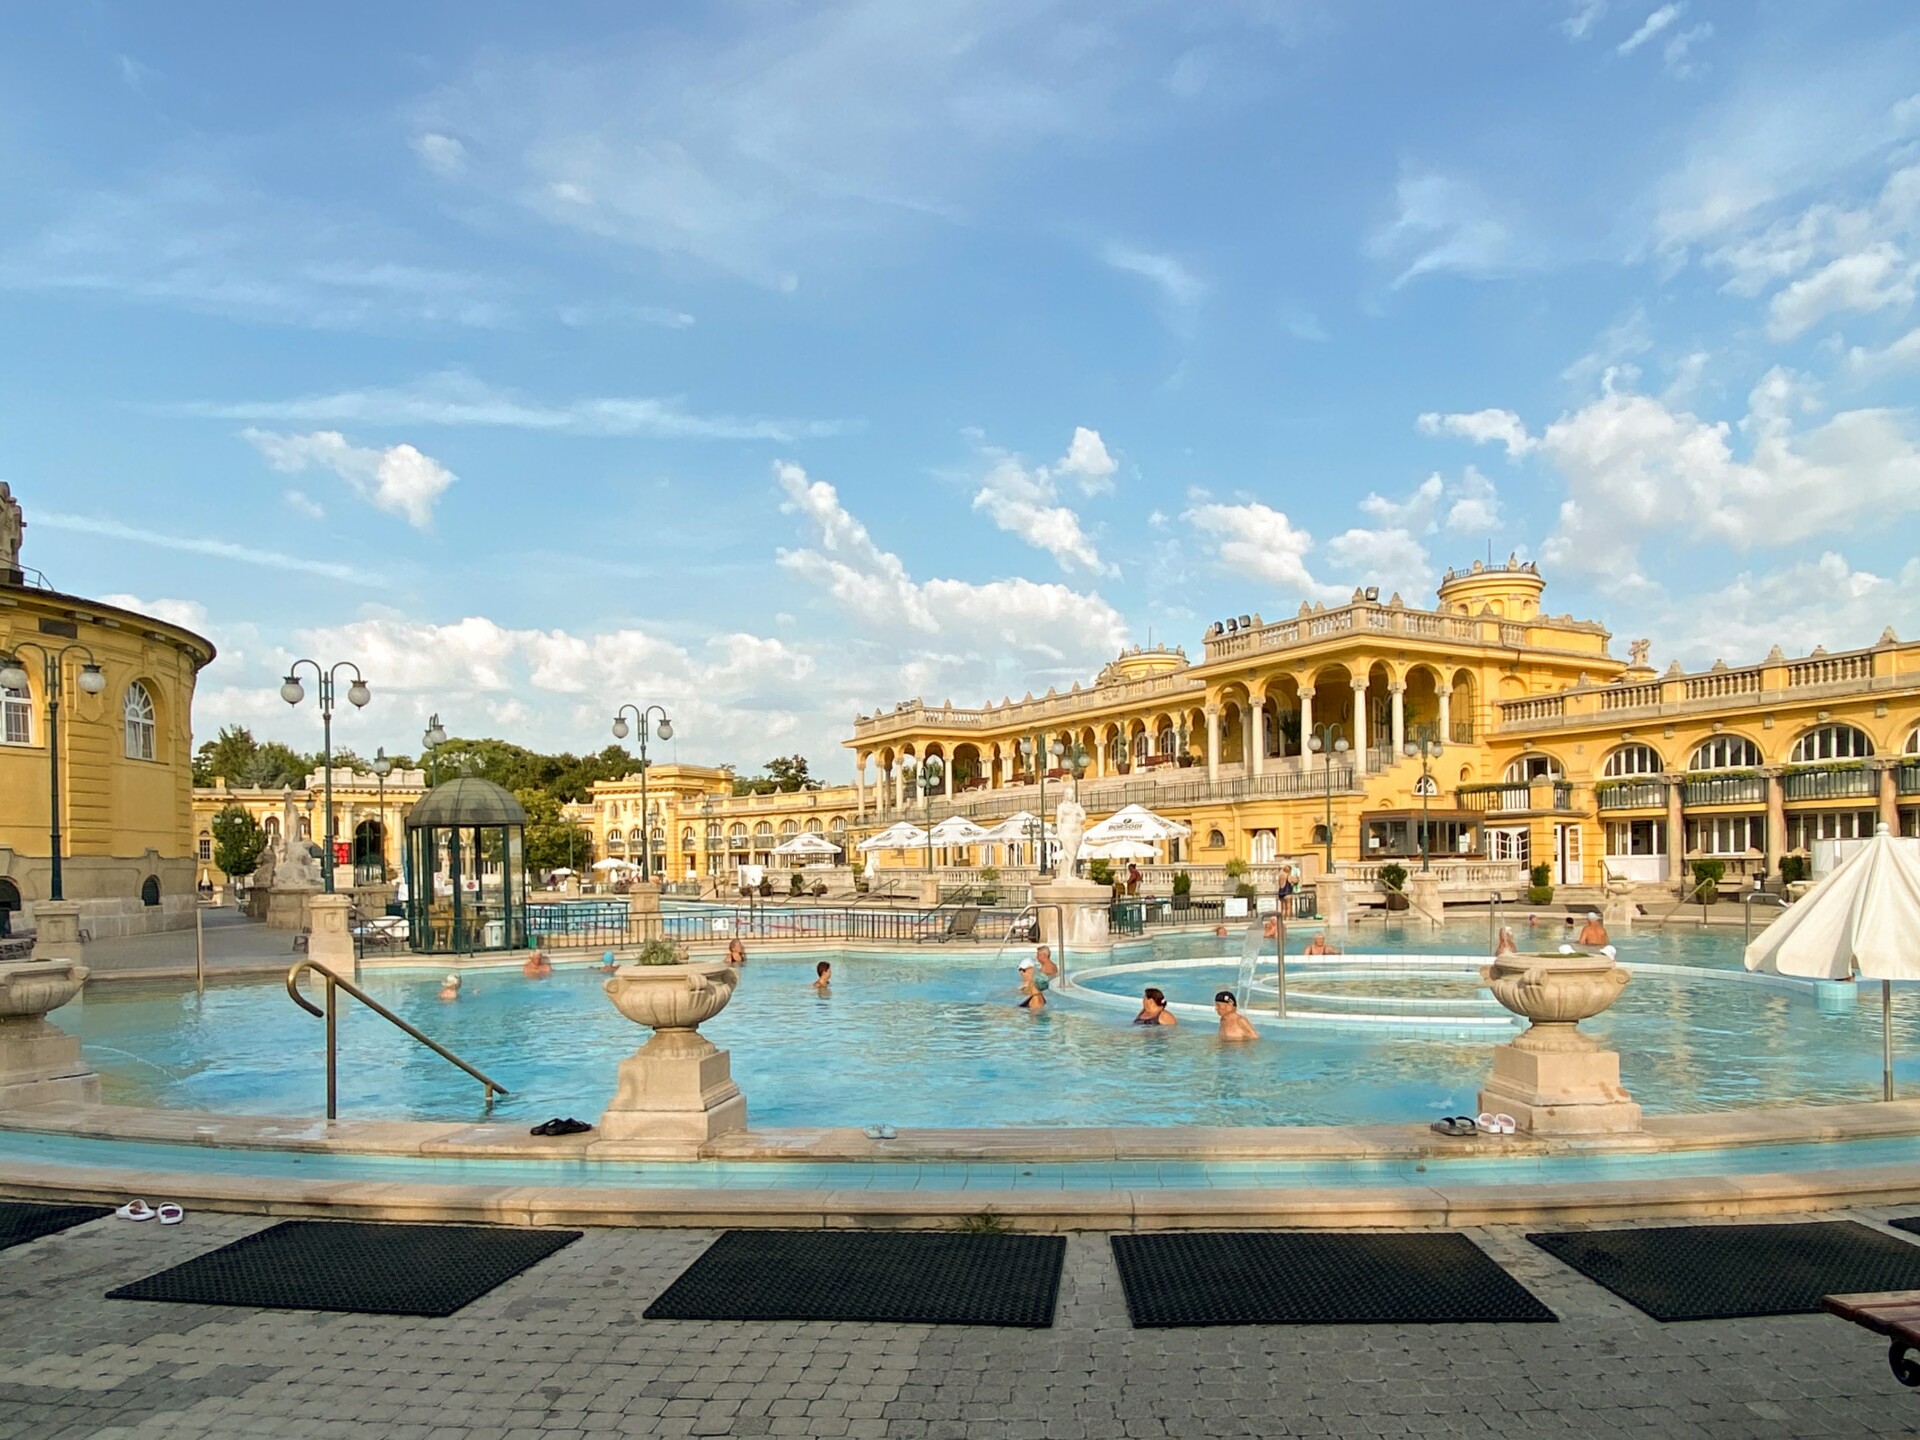 Ein weitläufiges Freibad mit klarem blauem Wasser, umgeben von neoklassizistischen gelben Gebäuden mit Bogengängen und Verzierungen. Mehrere Personen entspannen sich im Wasser und auf den Poolrändern an einem sonnigen Tag mit vereinzelten Wolken am Himmel.